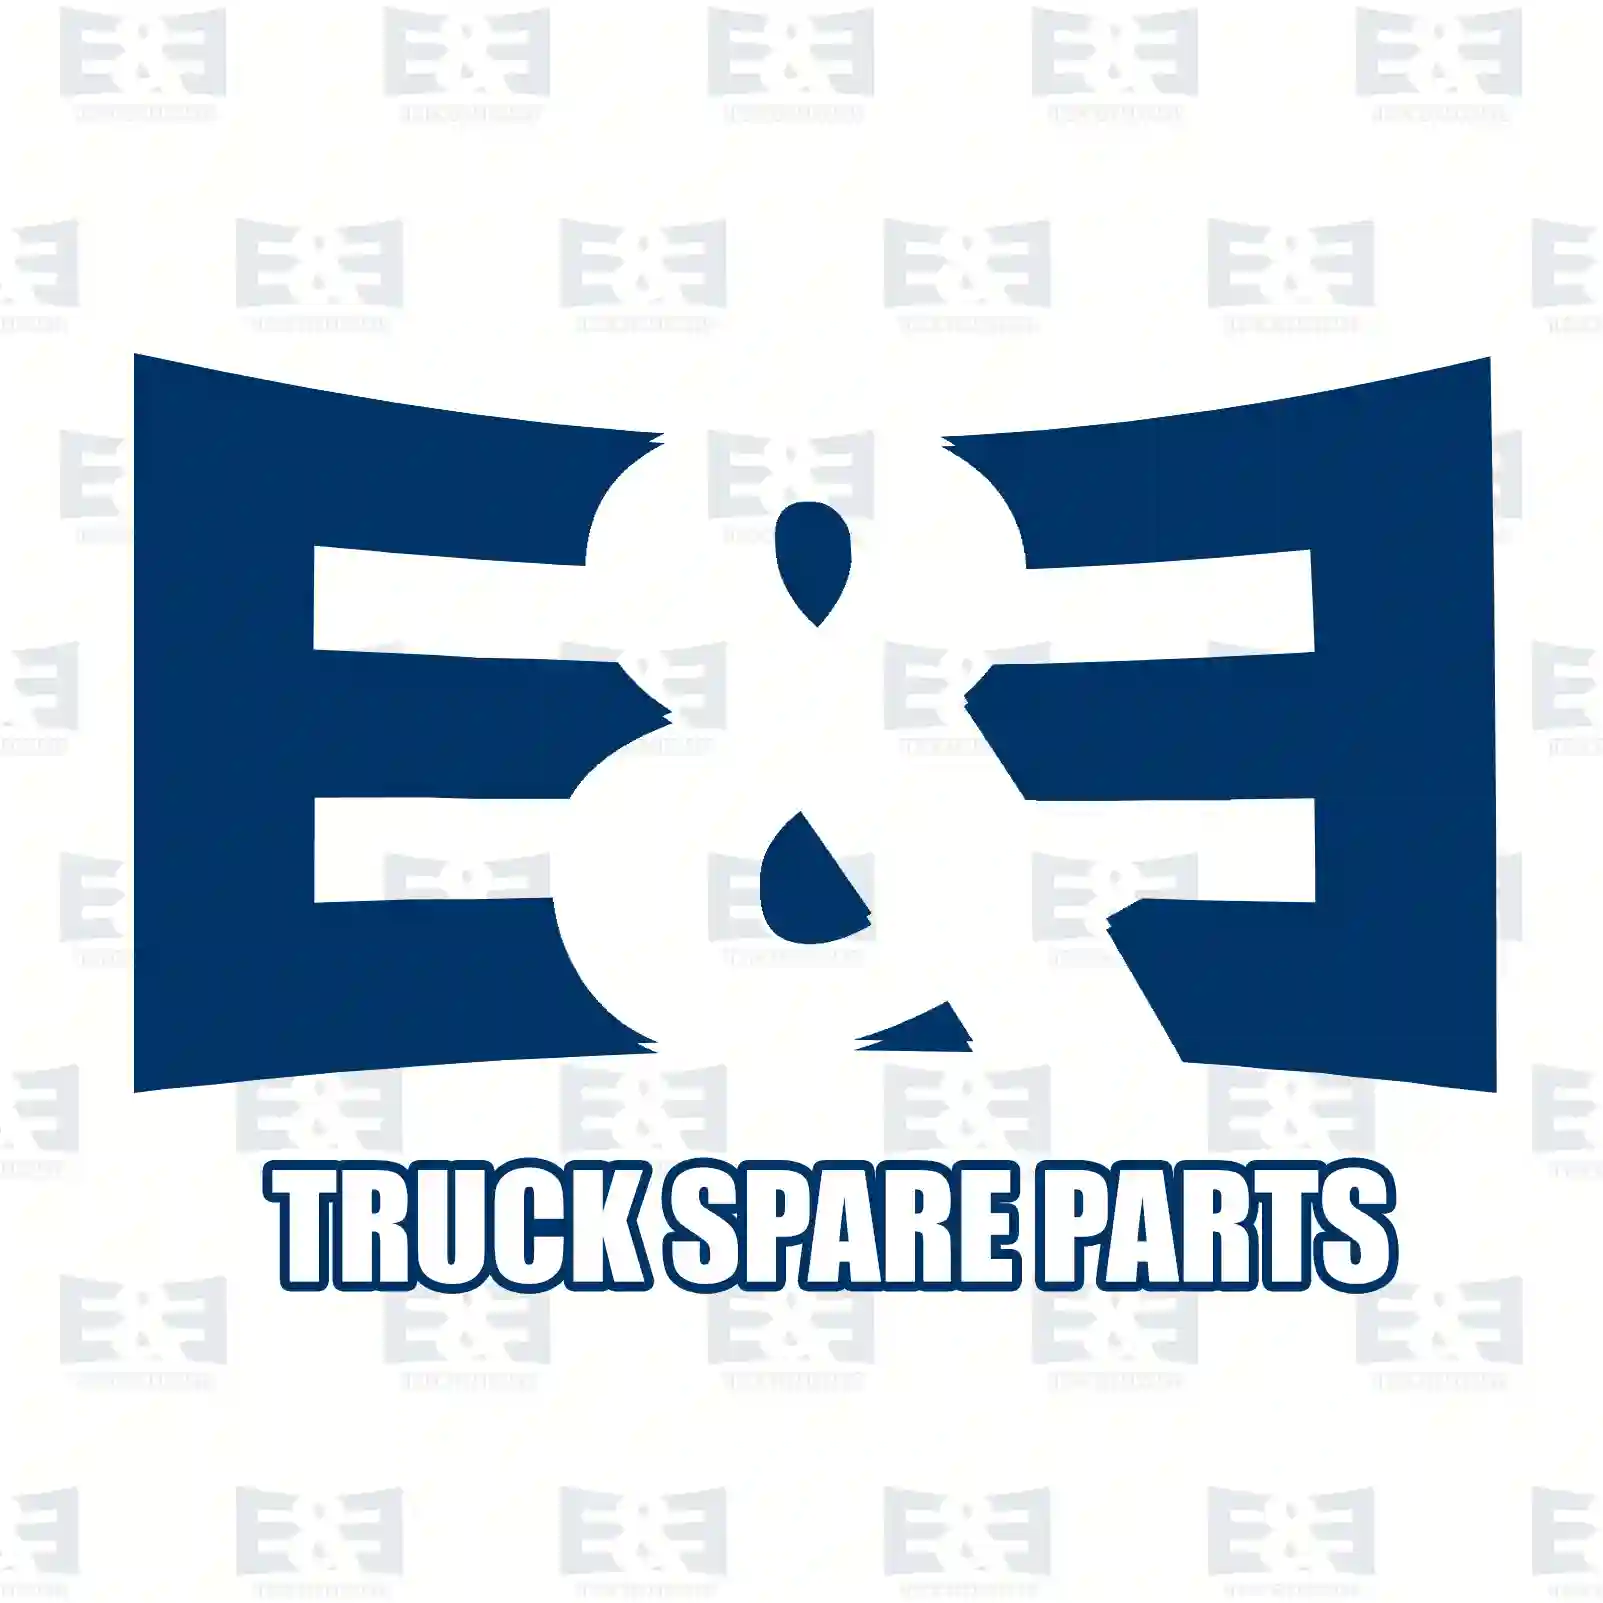 Repair kit, plug, 2E2298472, 1453748S2, 5010306112S3, 1392811S3, 984849S3 ||  2E2298472 E&E Truck Spare Parts | Truck Spare Parts, Auotomotive Spare Parts Repair kit, plug, 2E2298472, 1453748S2, 5010306112S3, 1392811S3, 984849S3 ||  2E2298472 E&E Truck Spare Parts | Truck Spare Parts, Auotomotive Spare Parts